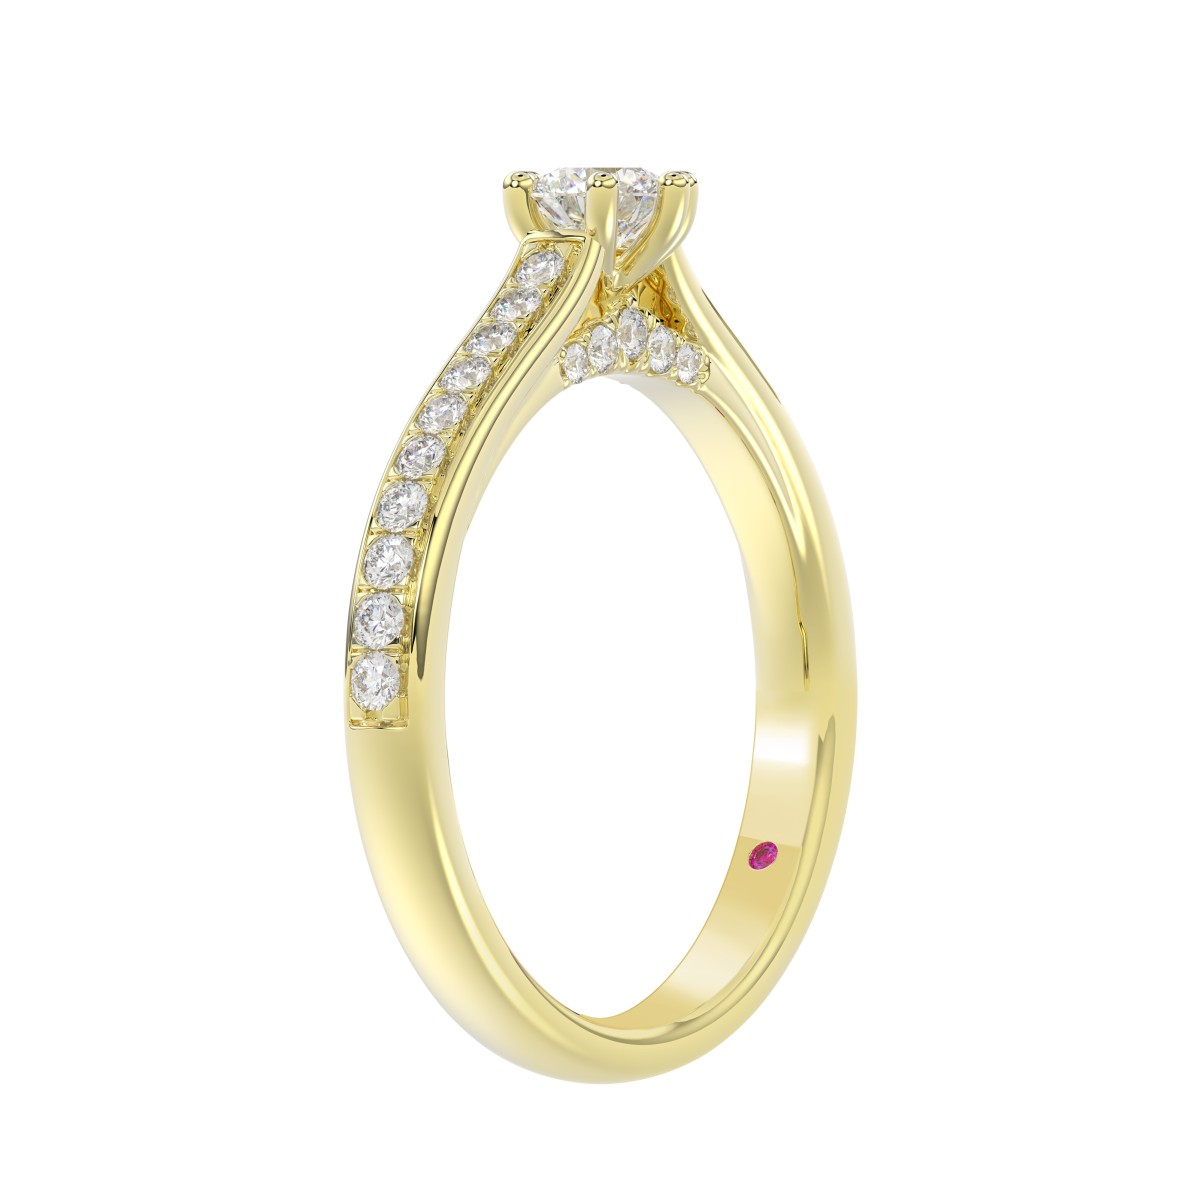 14K YELLOW GOLD 1/2CT ROUND DIAMOND LADIES RING( CENTER STONE ROUND DIAMOND 1/4CT)